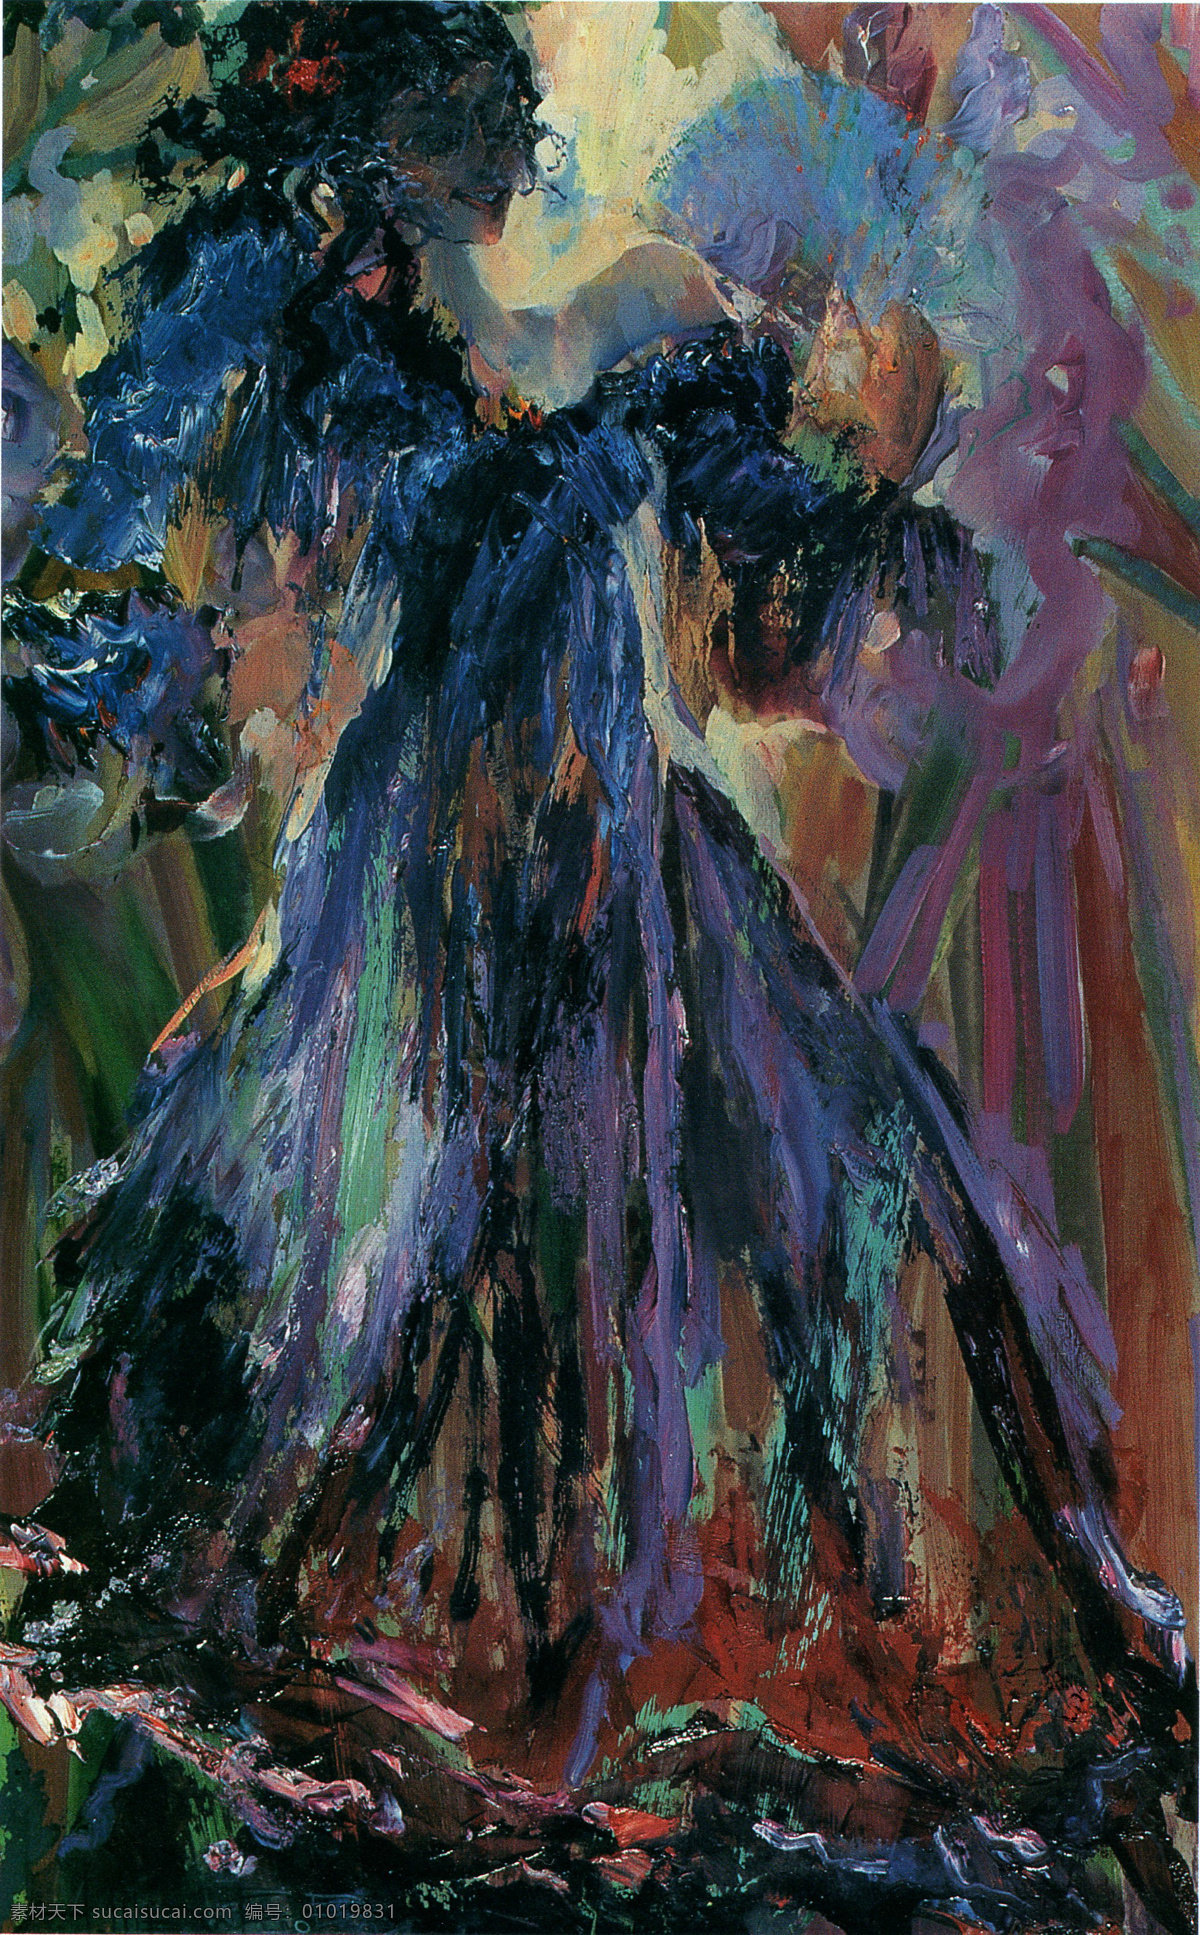 抽象 国外 绘画书法 蓝色 女人 人物 扇子 文化艺术 持扇舞者 乌克兰 青年画家 油画 舞蹈 形体 姿势 作品选 psd源文件